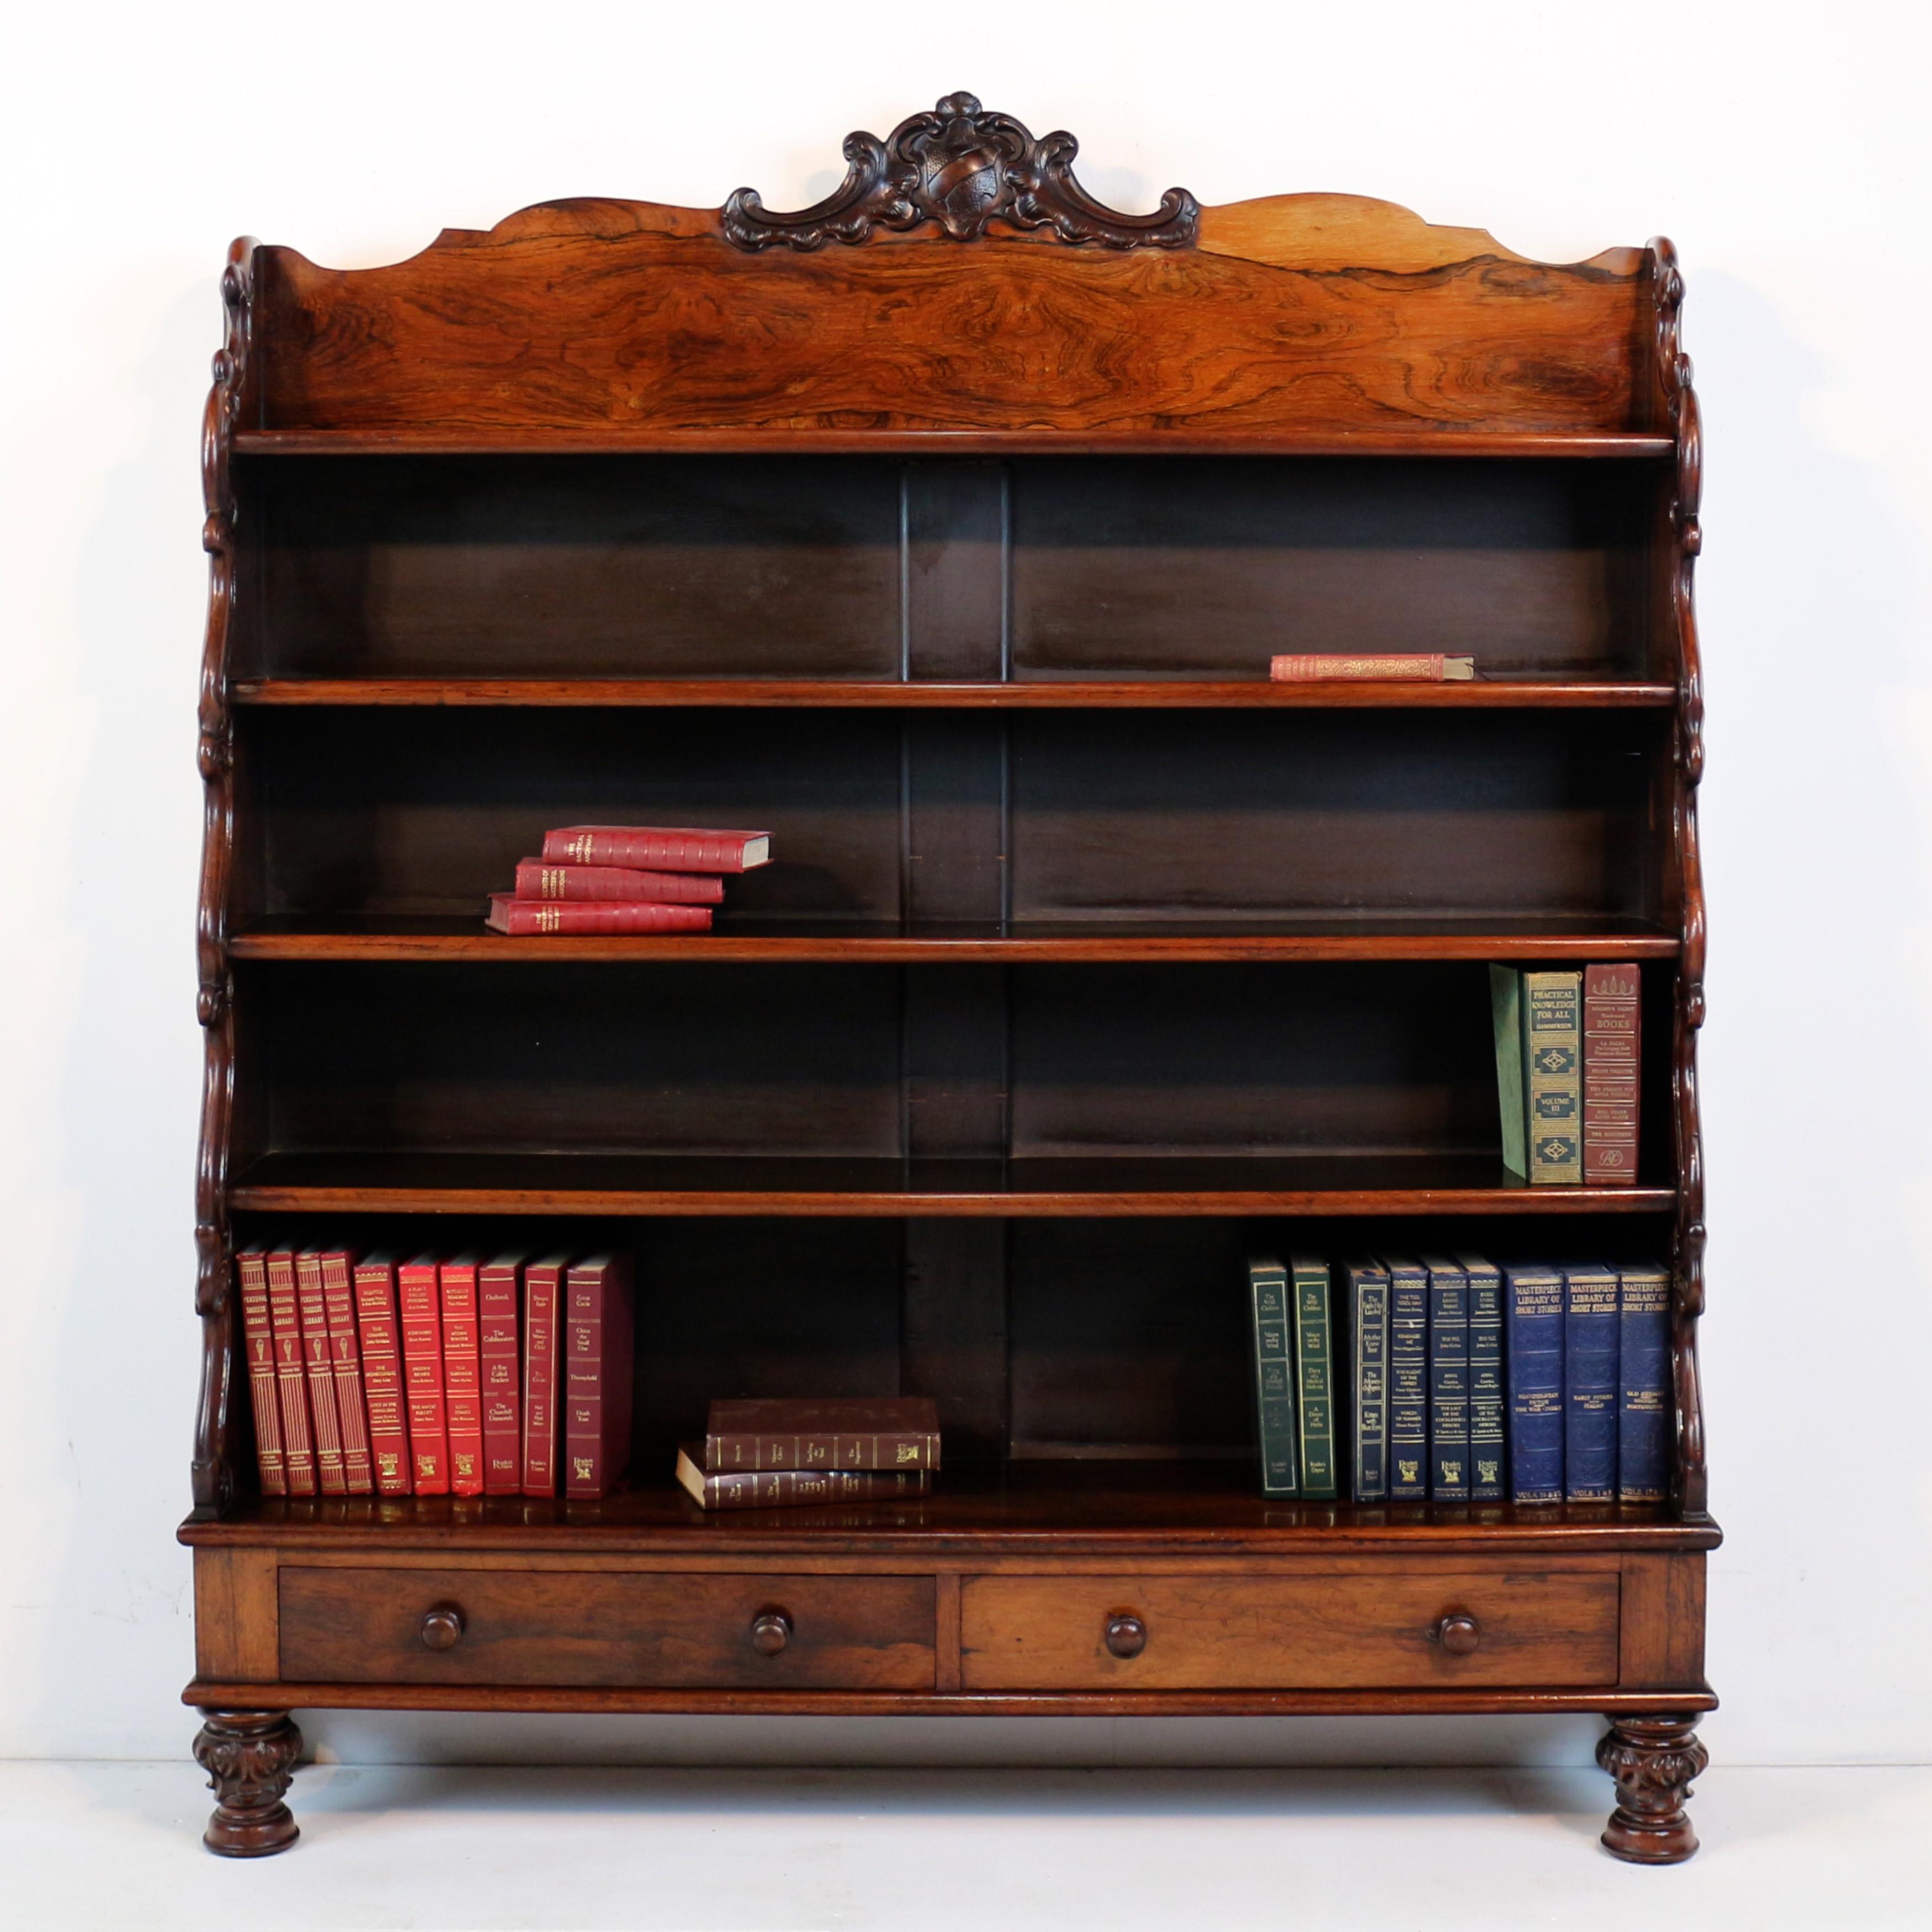 Meublez votre maison avec une élégance intemporelle - en présentant notre bibliothèque ancienne Regency en bois de rose, fabriquée en Angleterre vers 1820. Réalisée avec une attention exquise aux détails, cette pièce mêle harmonieusement des